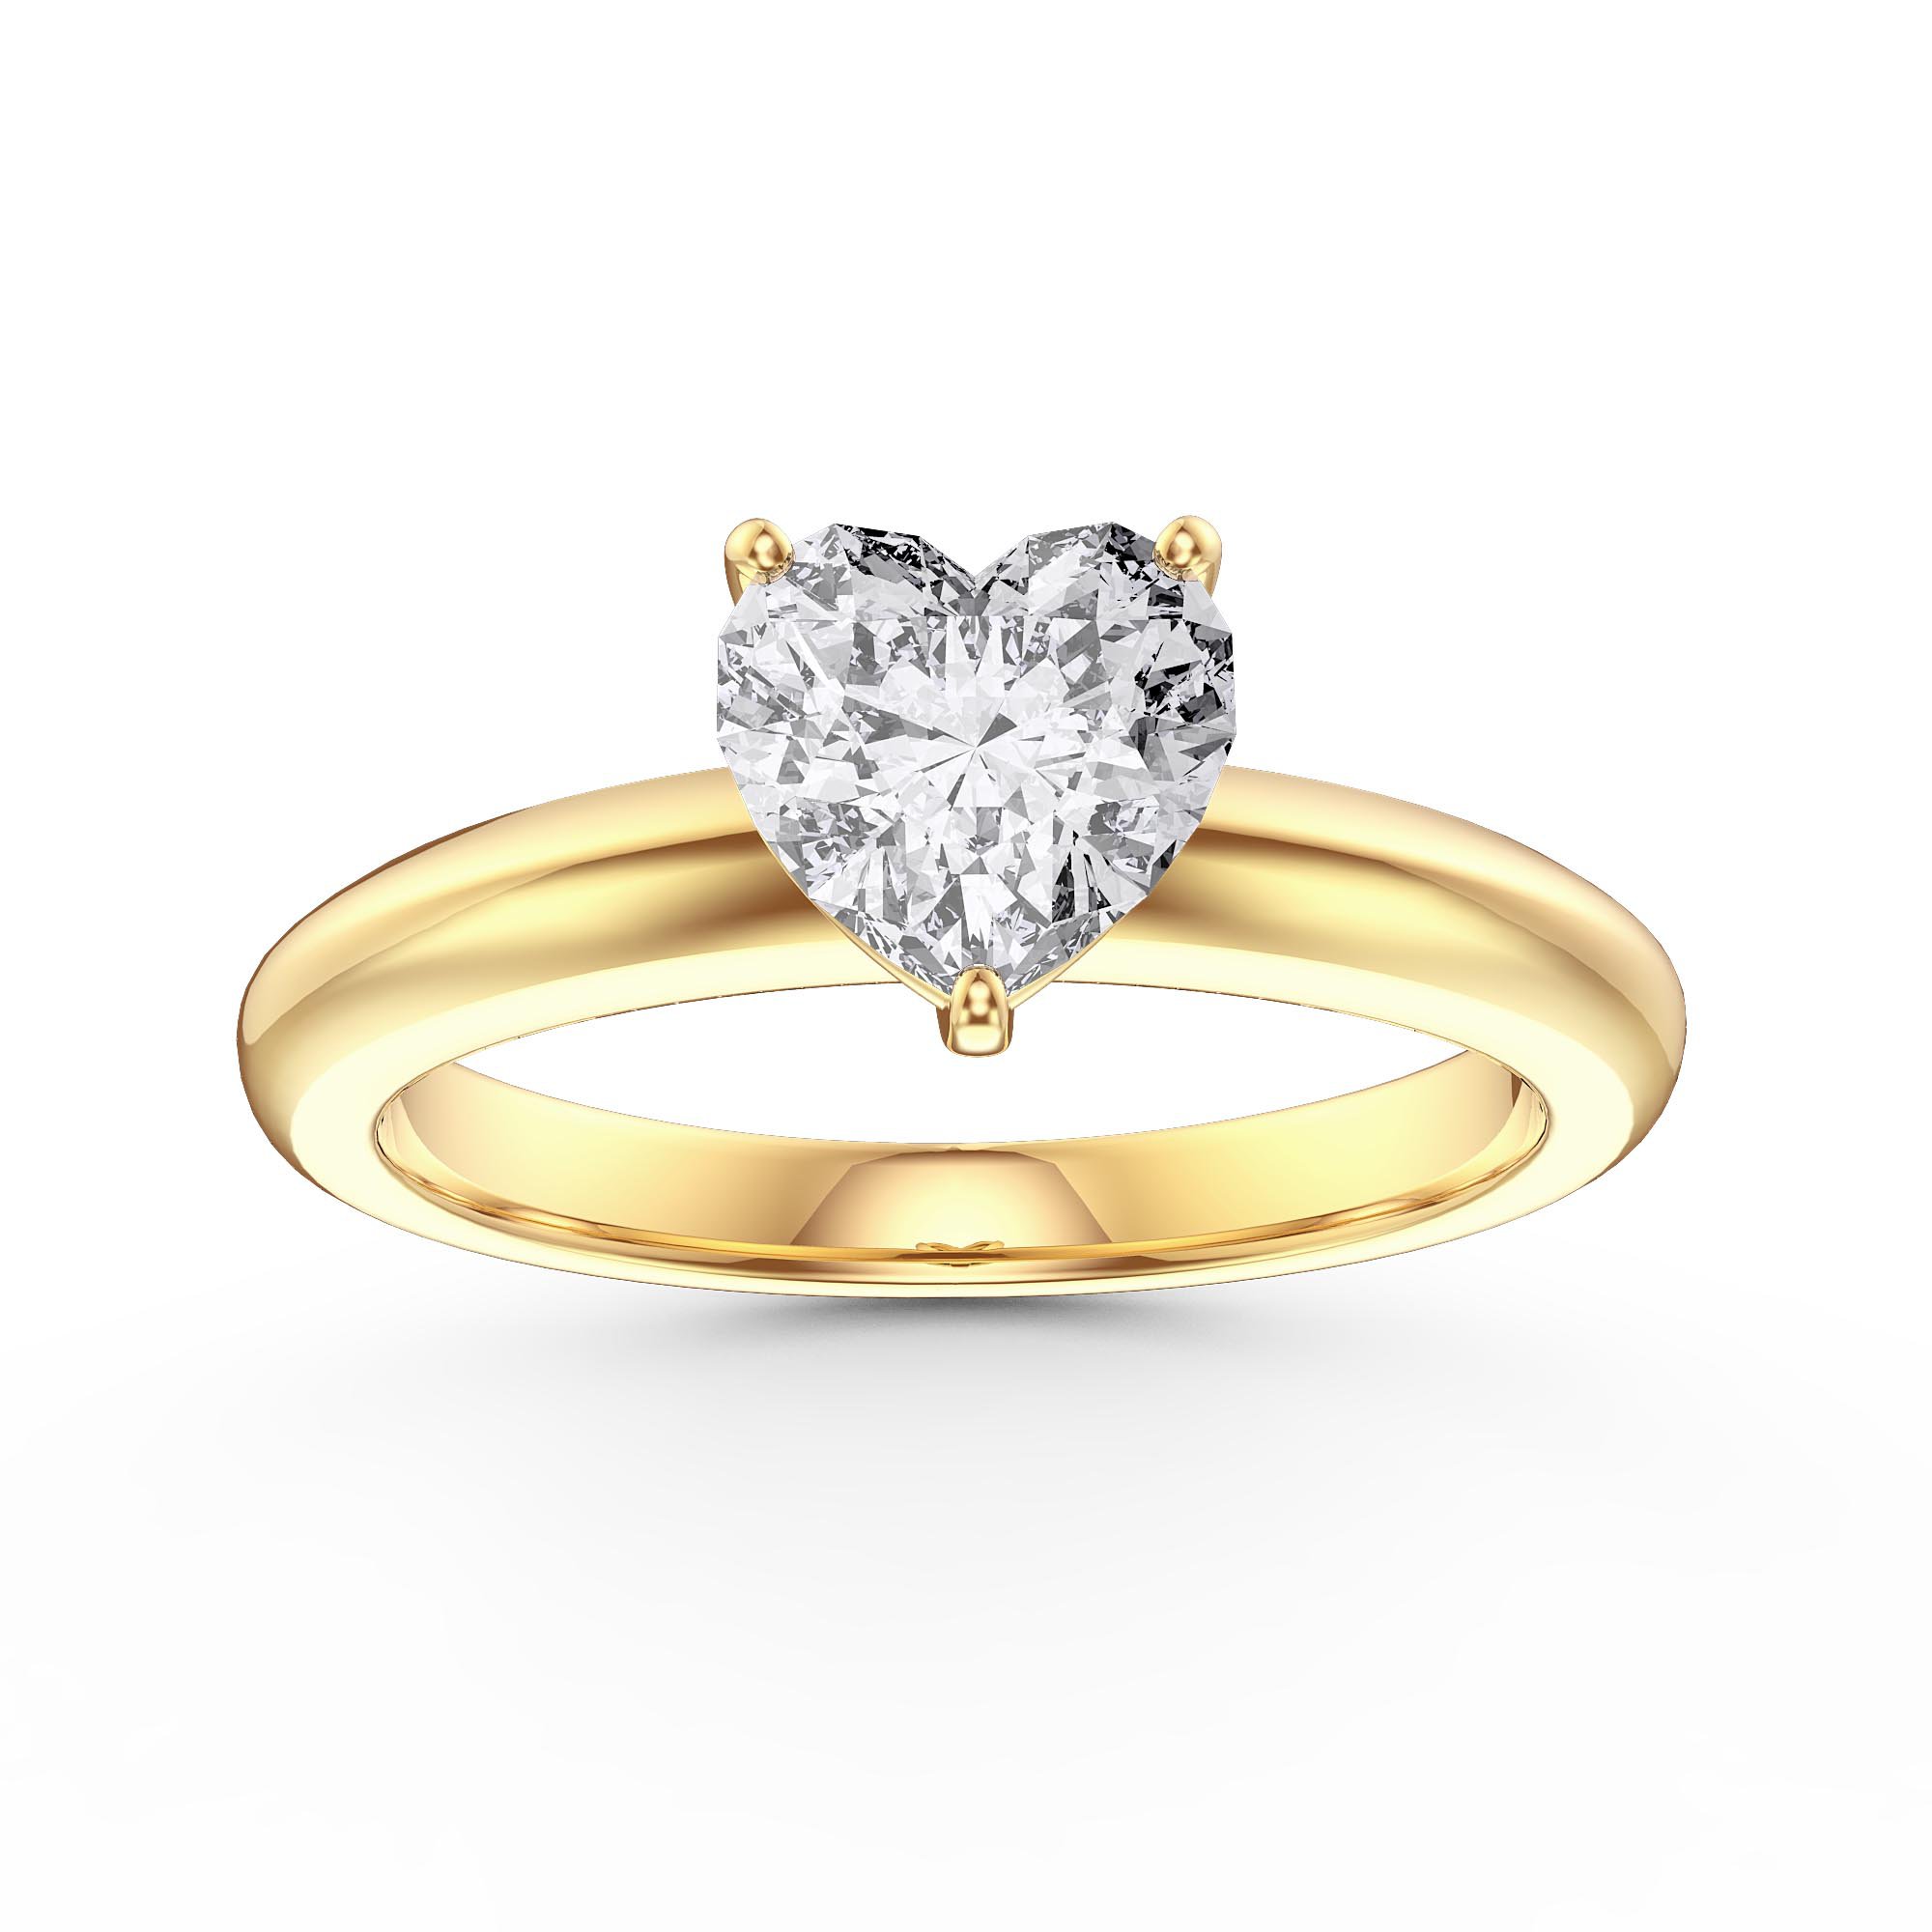 Expertise Misleidend Bemiddelaar Unity 1ct Heart Diamond Solitaire 18K Yellow Gold Engagement Ring:Jian  London:18K Gold Rings